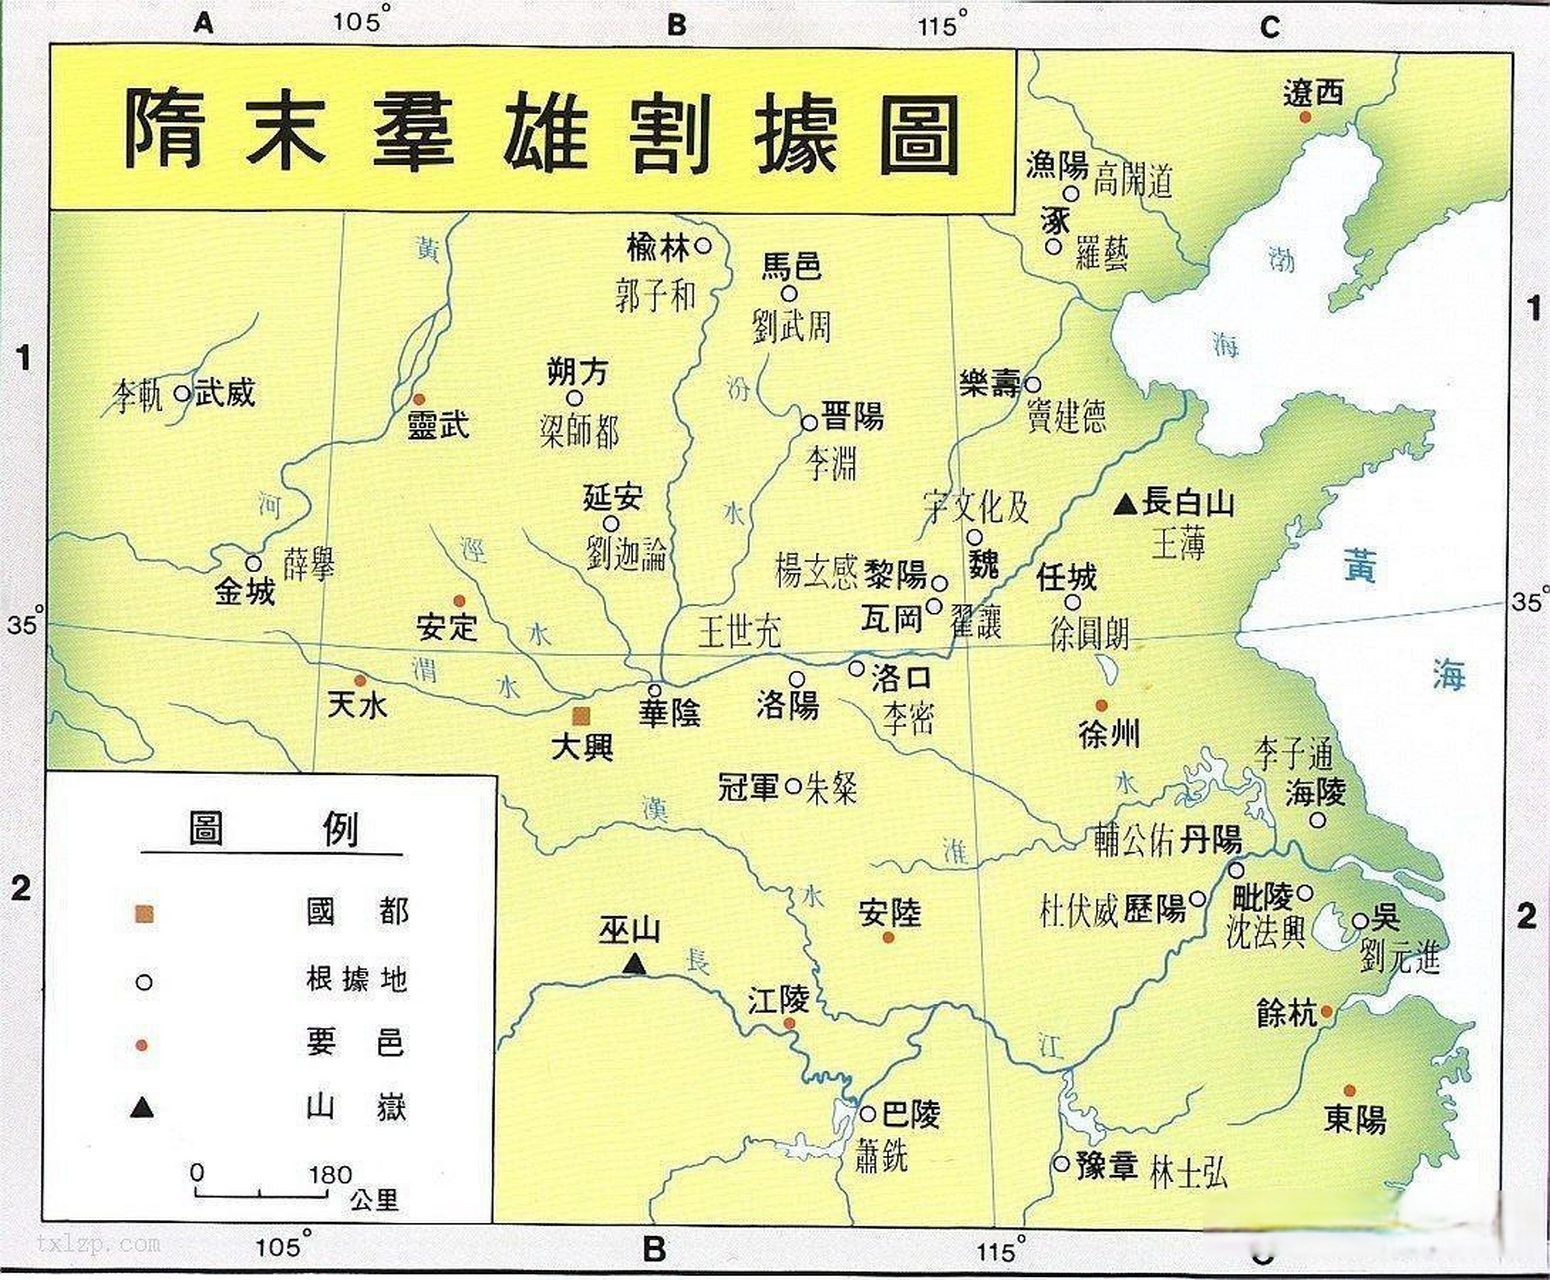 地图历史地理 隋末农民起义是隋朝末年各地农民起义军为了推翻隋朝